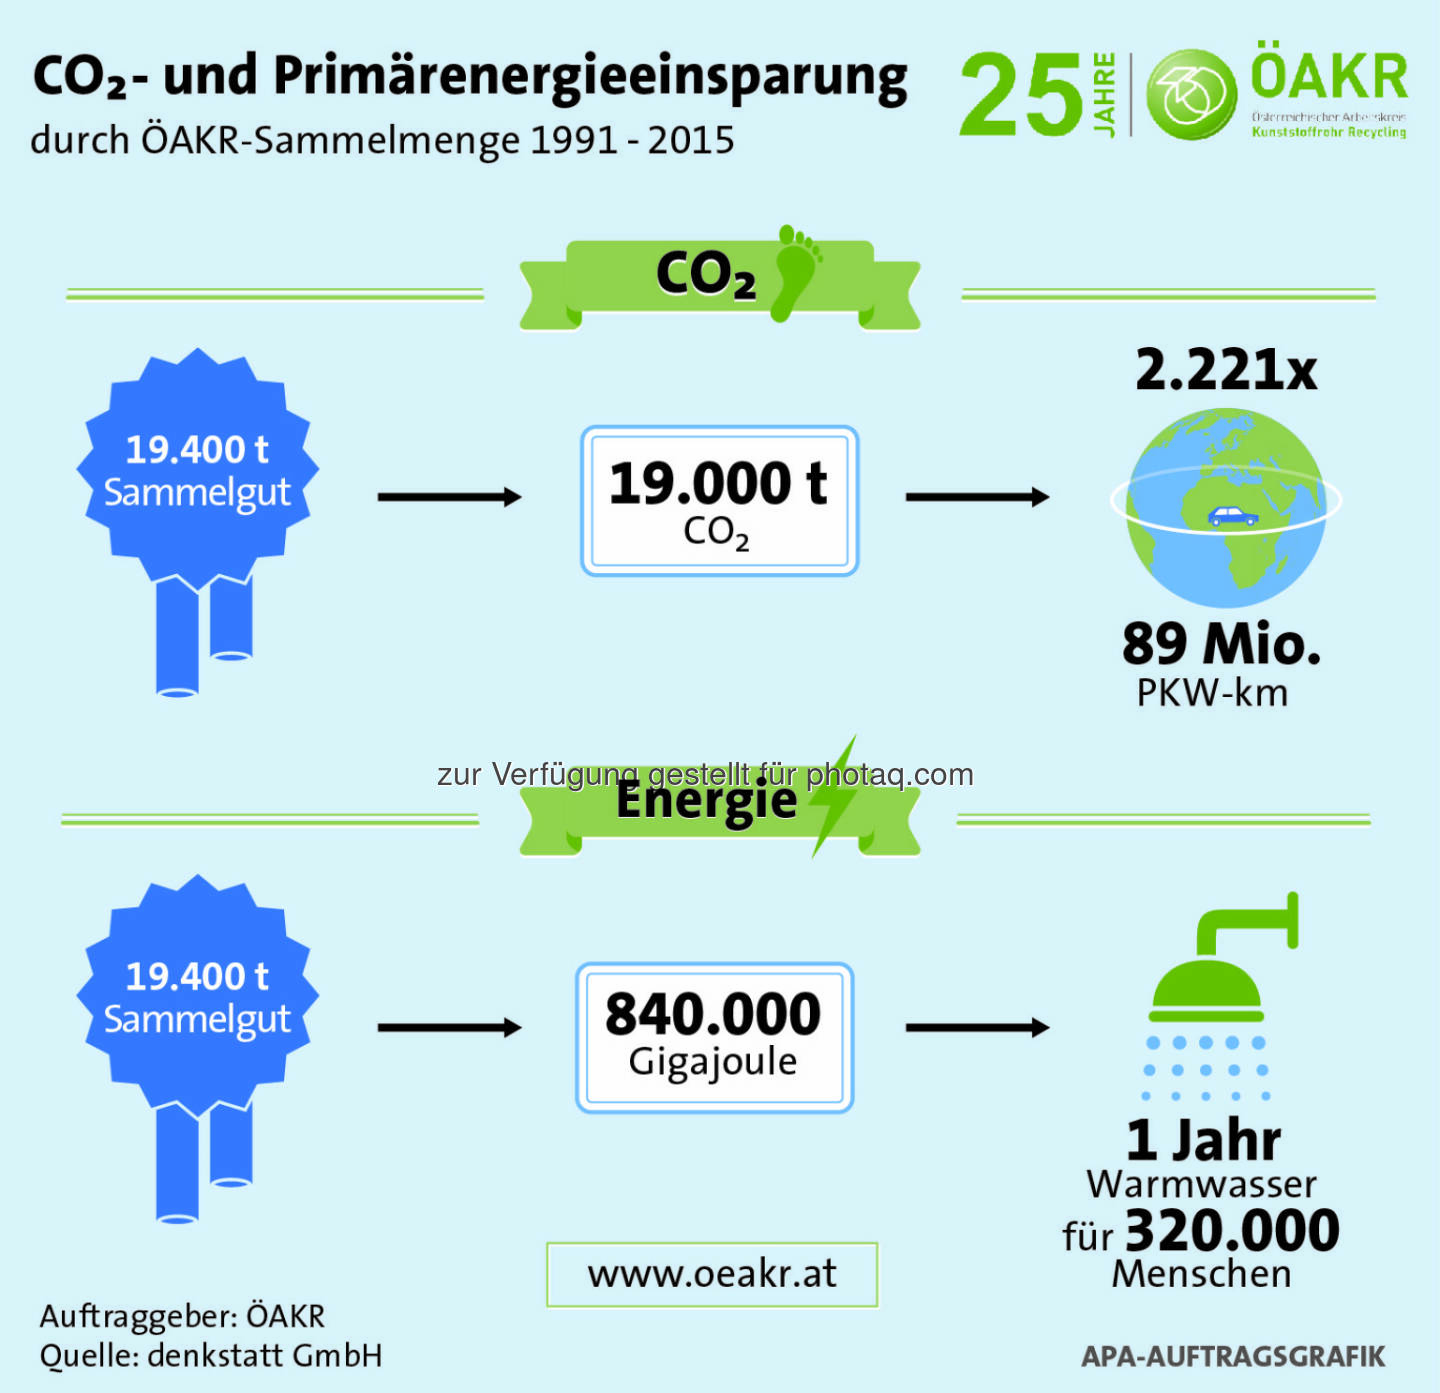 Grafik „Einsparungen CO2 und Energie durch ÖAKR“ : Fotocredit: APA Auftragsgrafik, Auftraggeber: ÖAKR, Quelle: denkstatt